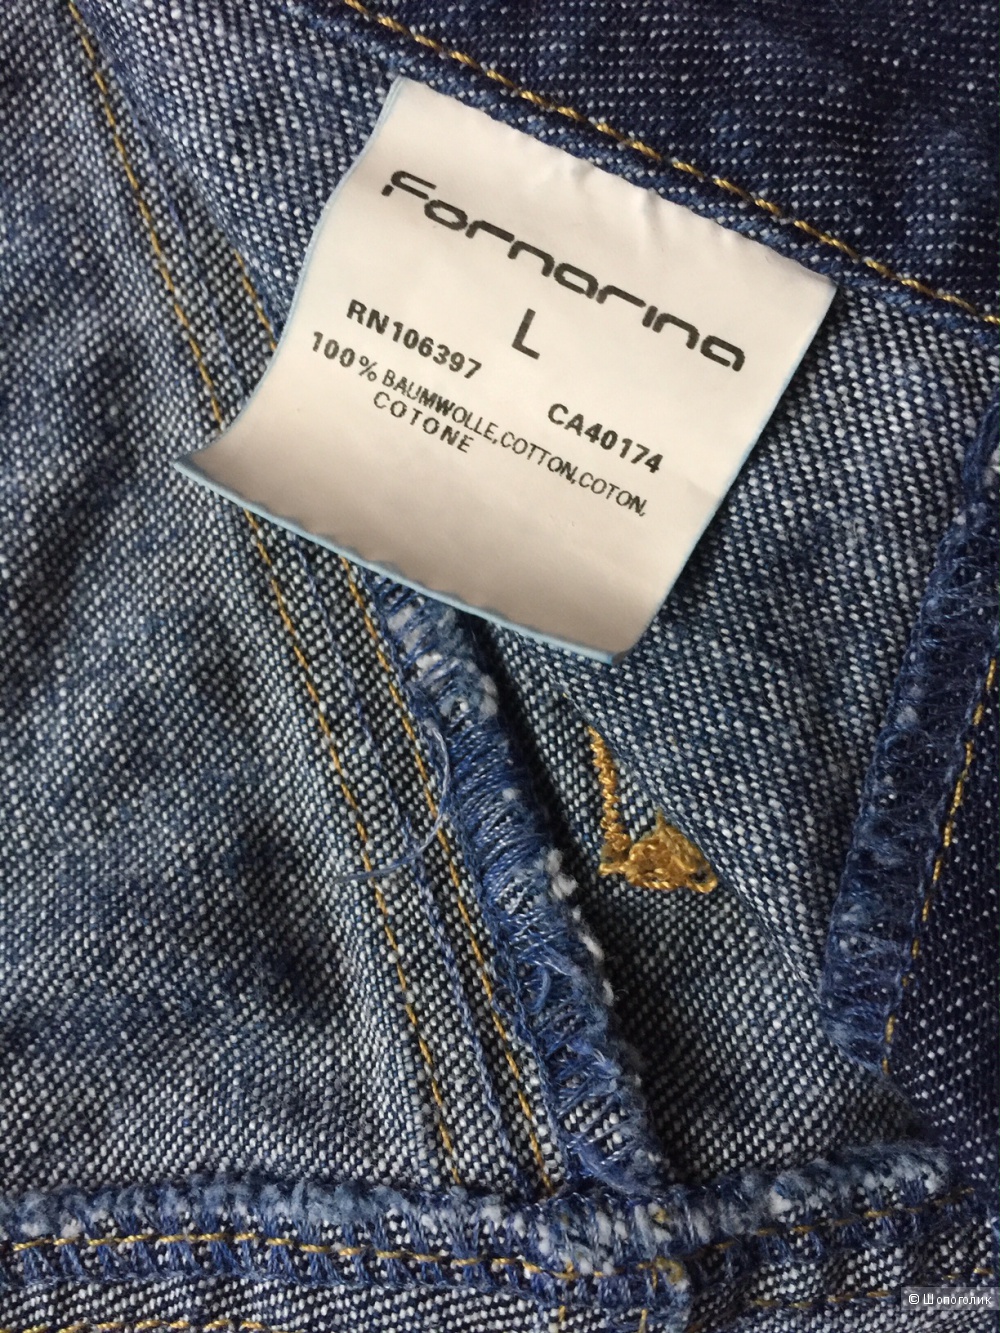 Юбка короткая джинсовая марка Fornarina размер L